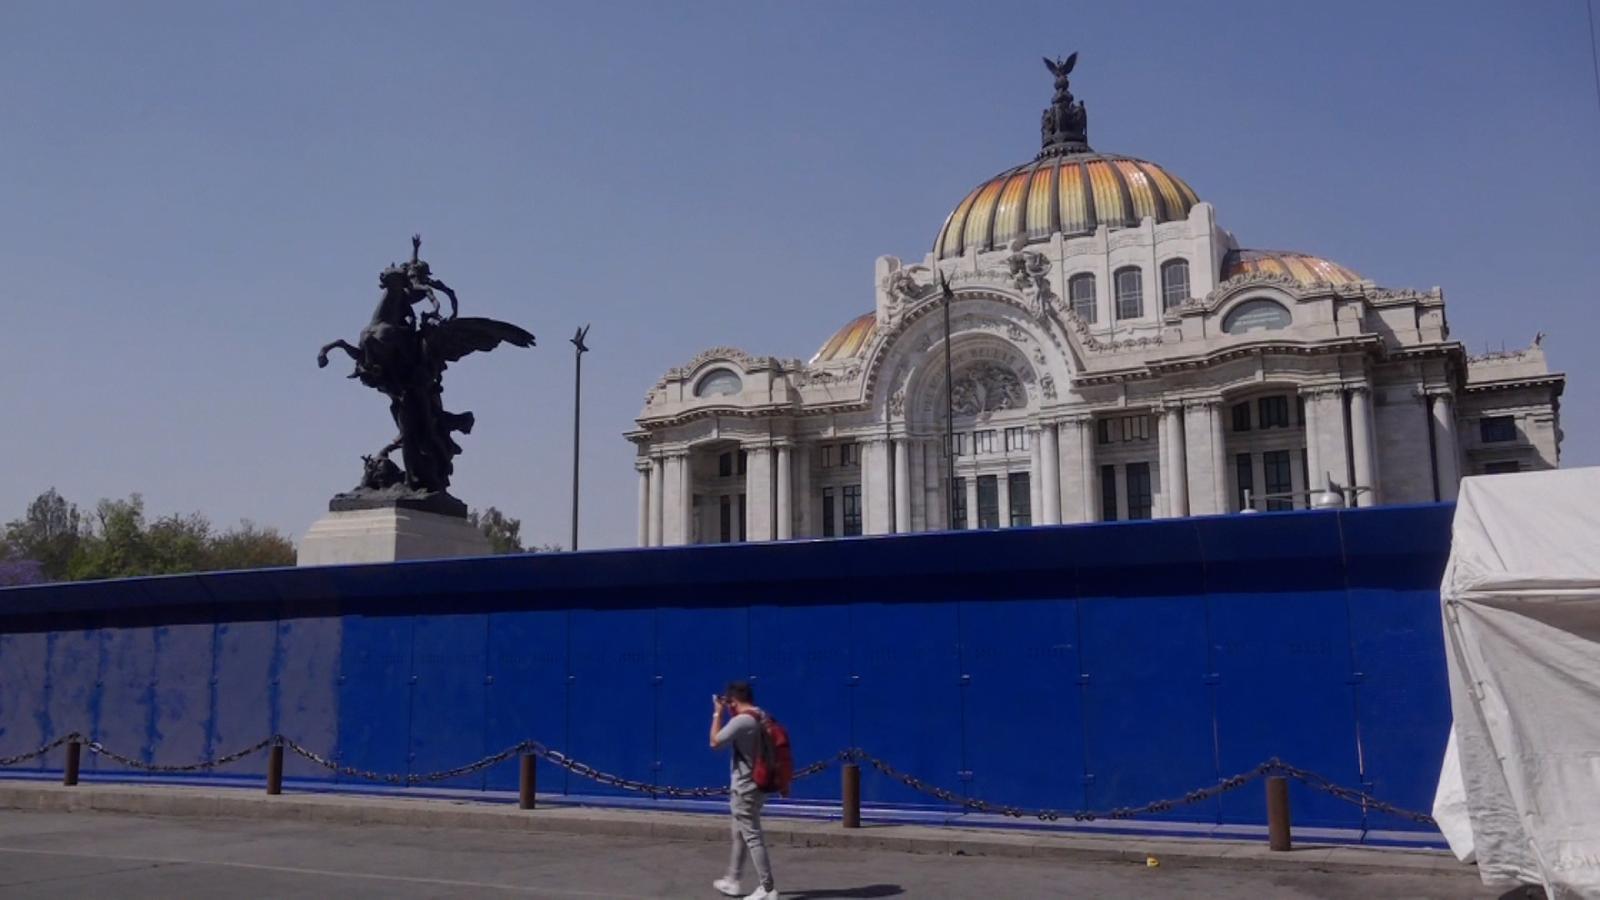 Autoridades protegen monumentos en Ciudad de México previo a marchas por  Día de la Mujer | Video | CNN